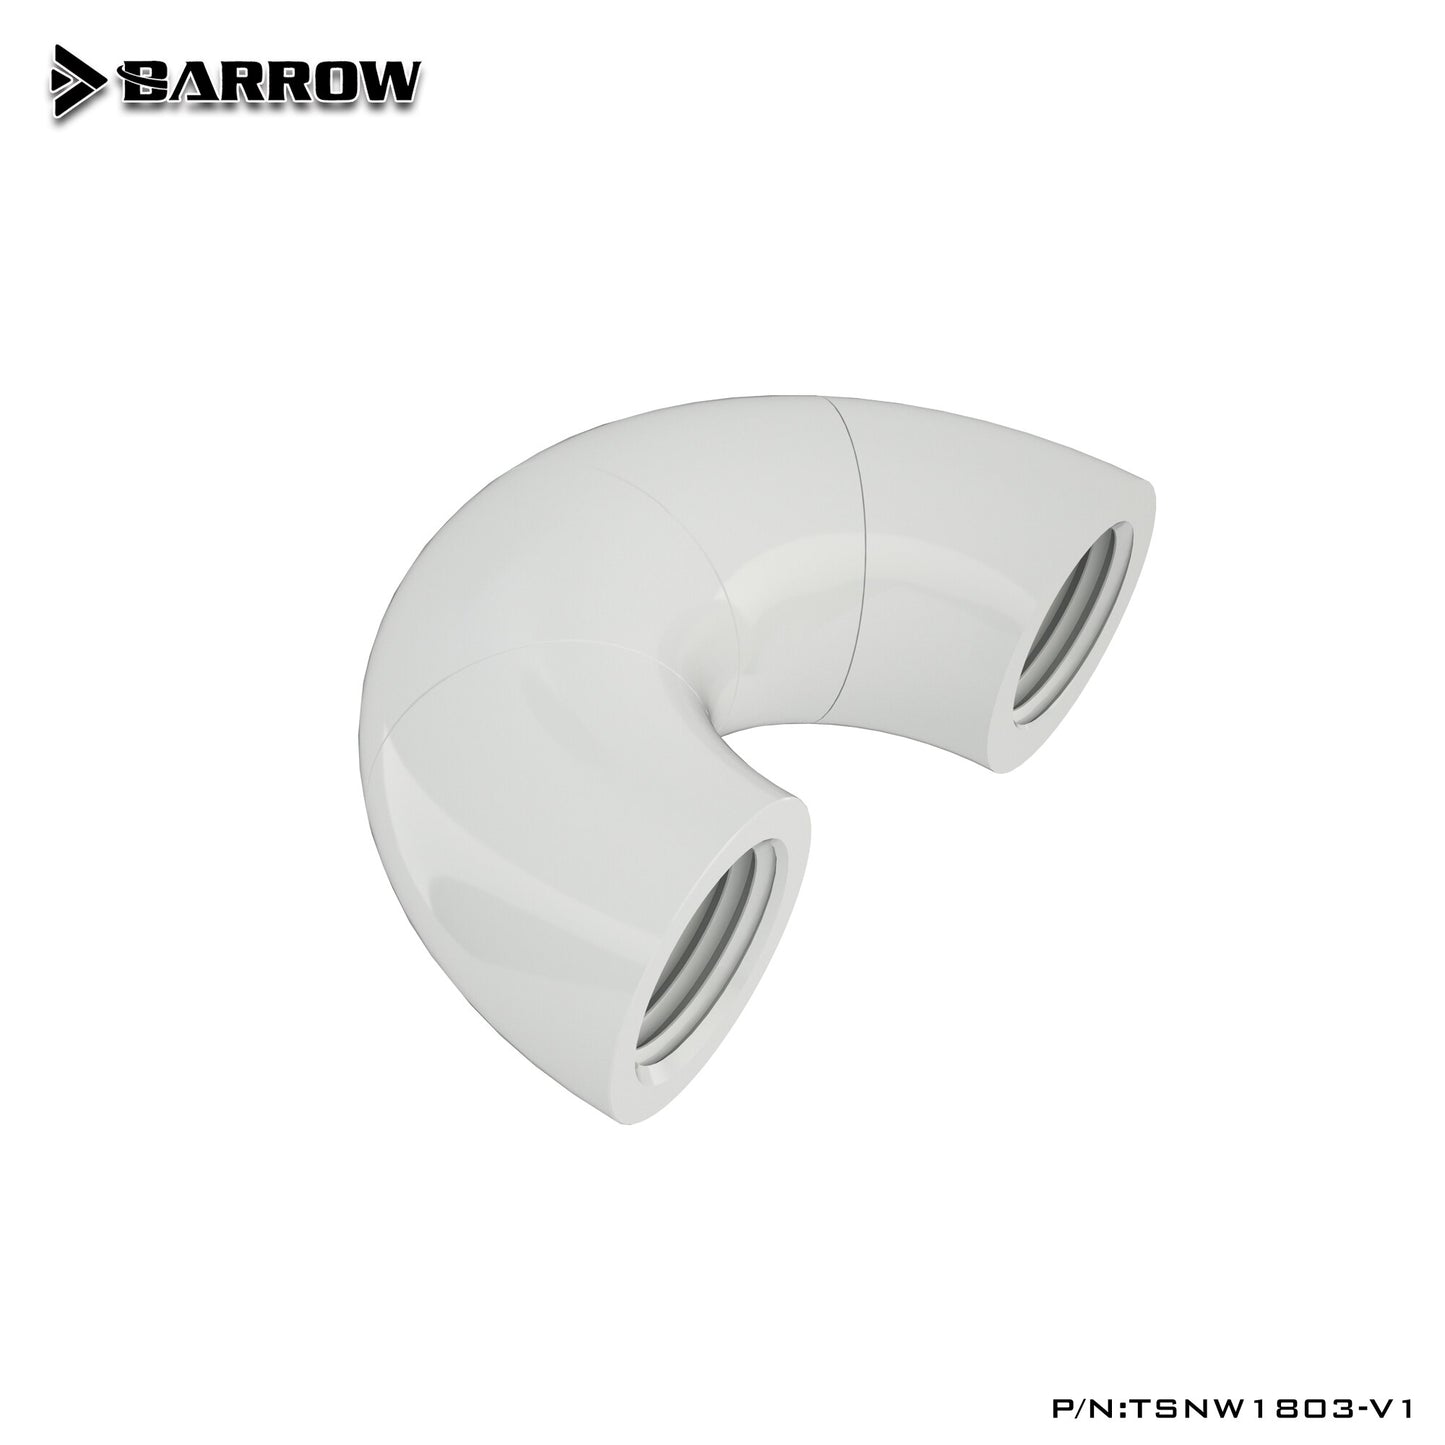 Barrow TSNW1803-V1, 180 Degree Zigzag Rotatable Fittings, Four-stage Female To Female Rotatable Fittings